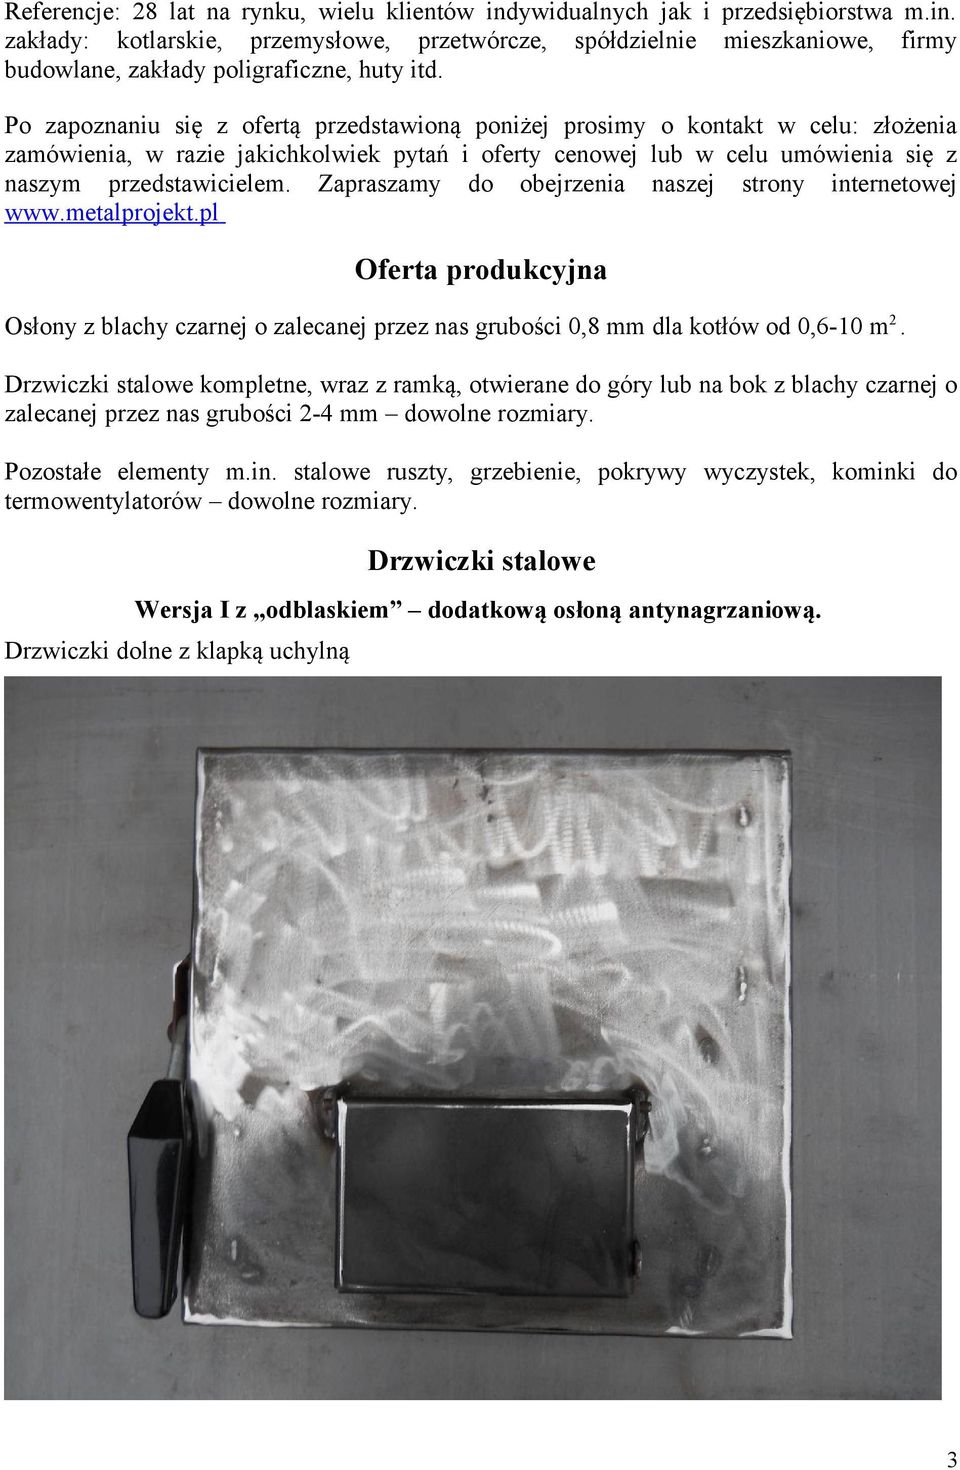 Zapraszamy do obejrzenia naszej strony internetowej www.metalprojekt.pl Oferta produkcyjna Osłony z blachy czarnej o zalecanej przez nas grubości 0,8 mm dla kotłów od 0,6-10 m2.